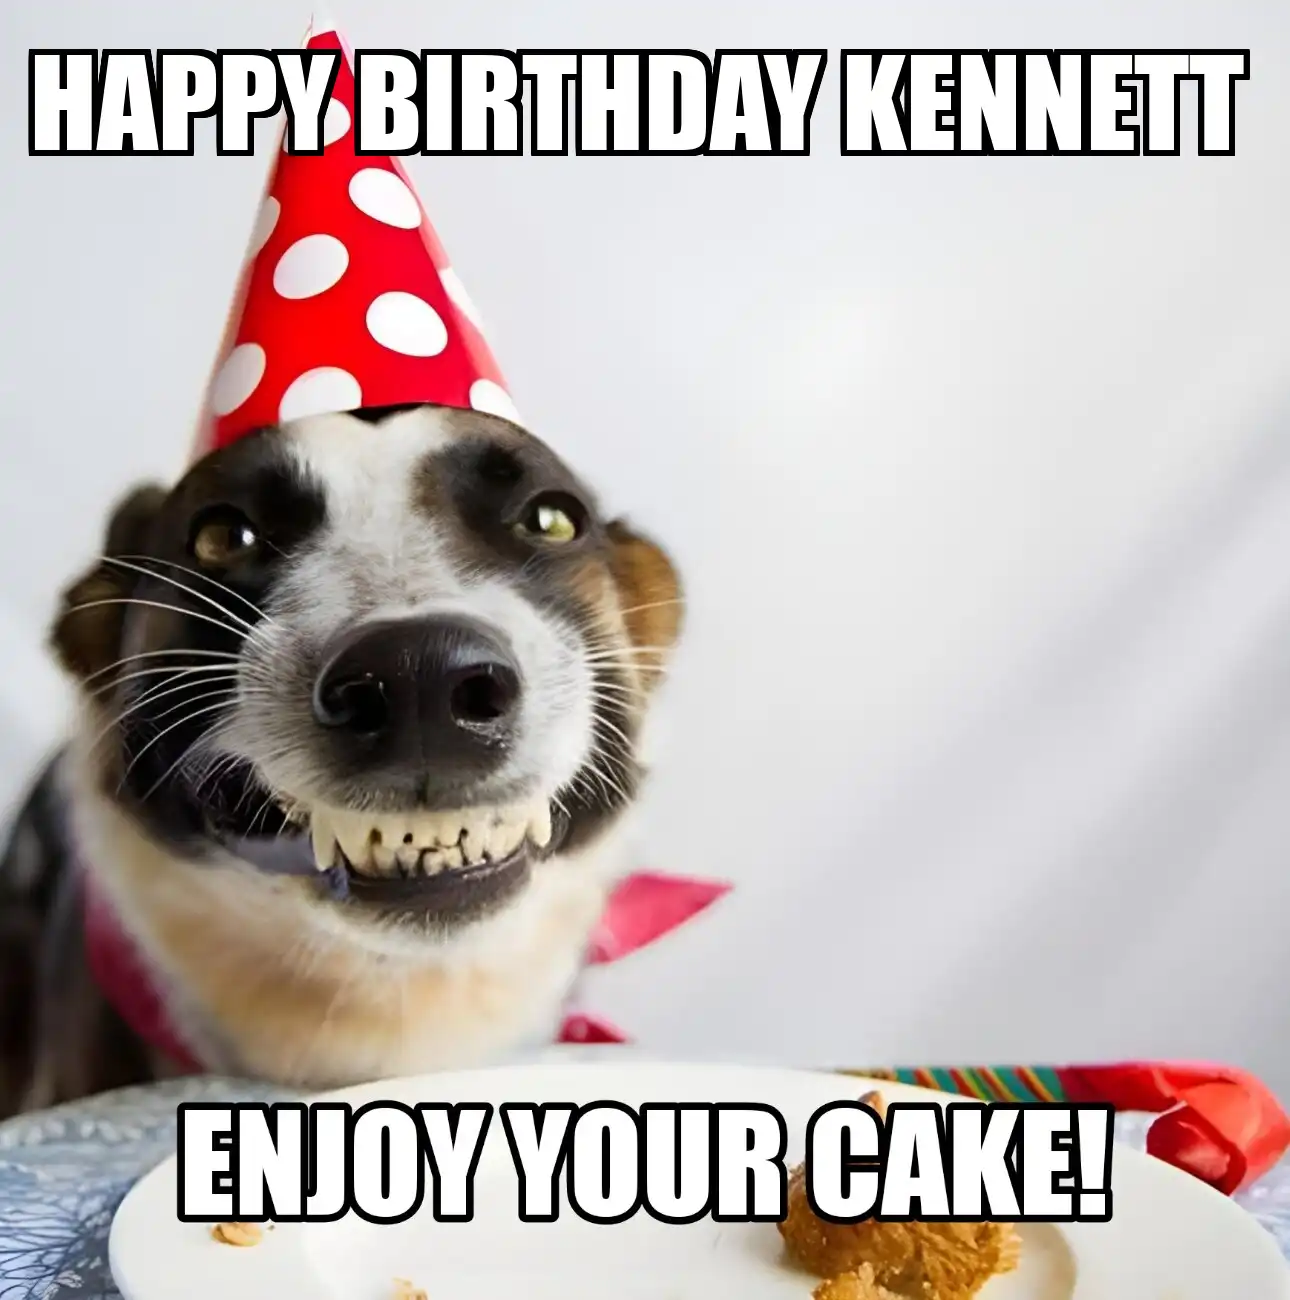 Happy Birthday Kennett Enjoy Your Cake Dog Meme